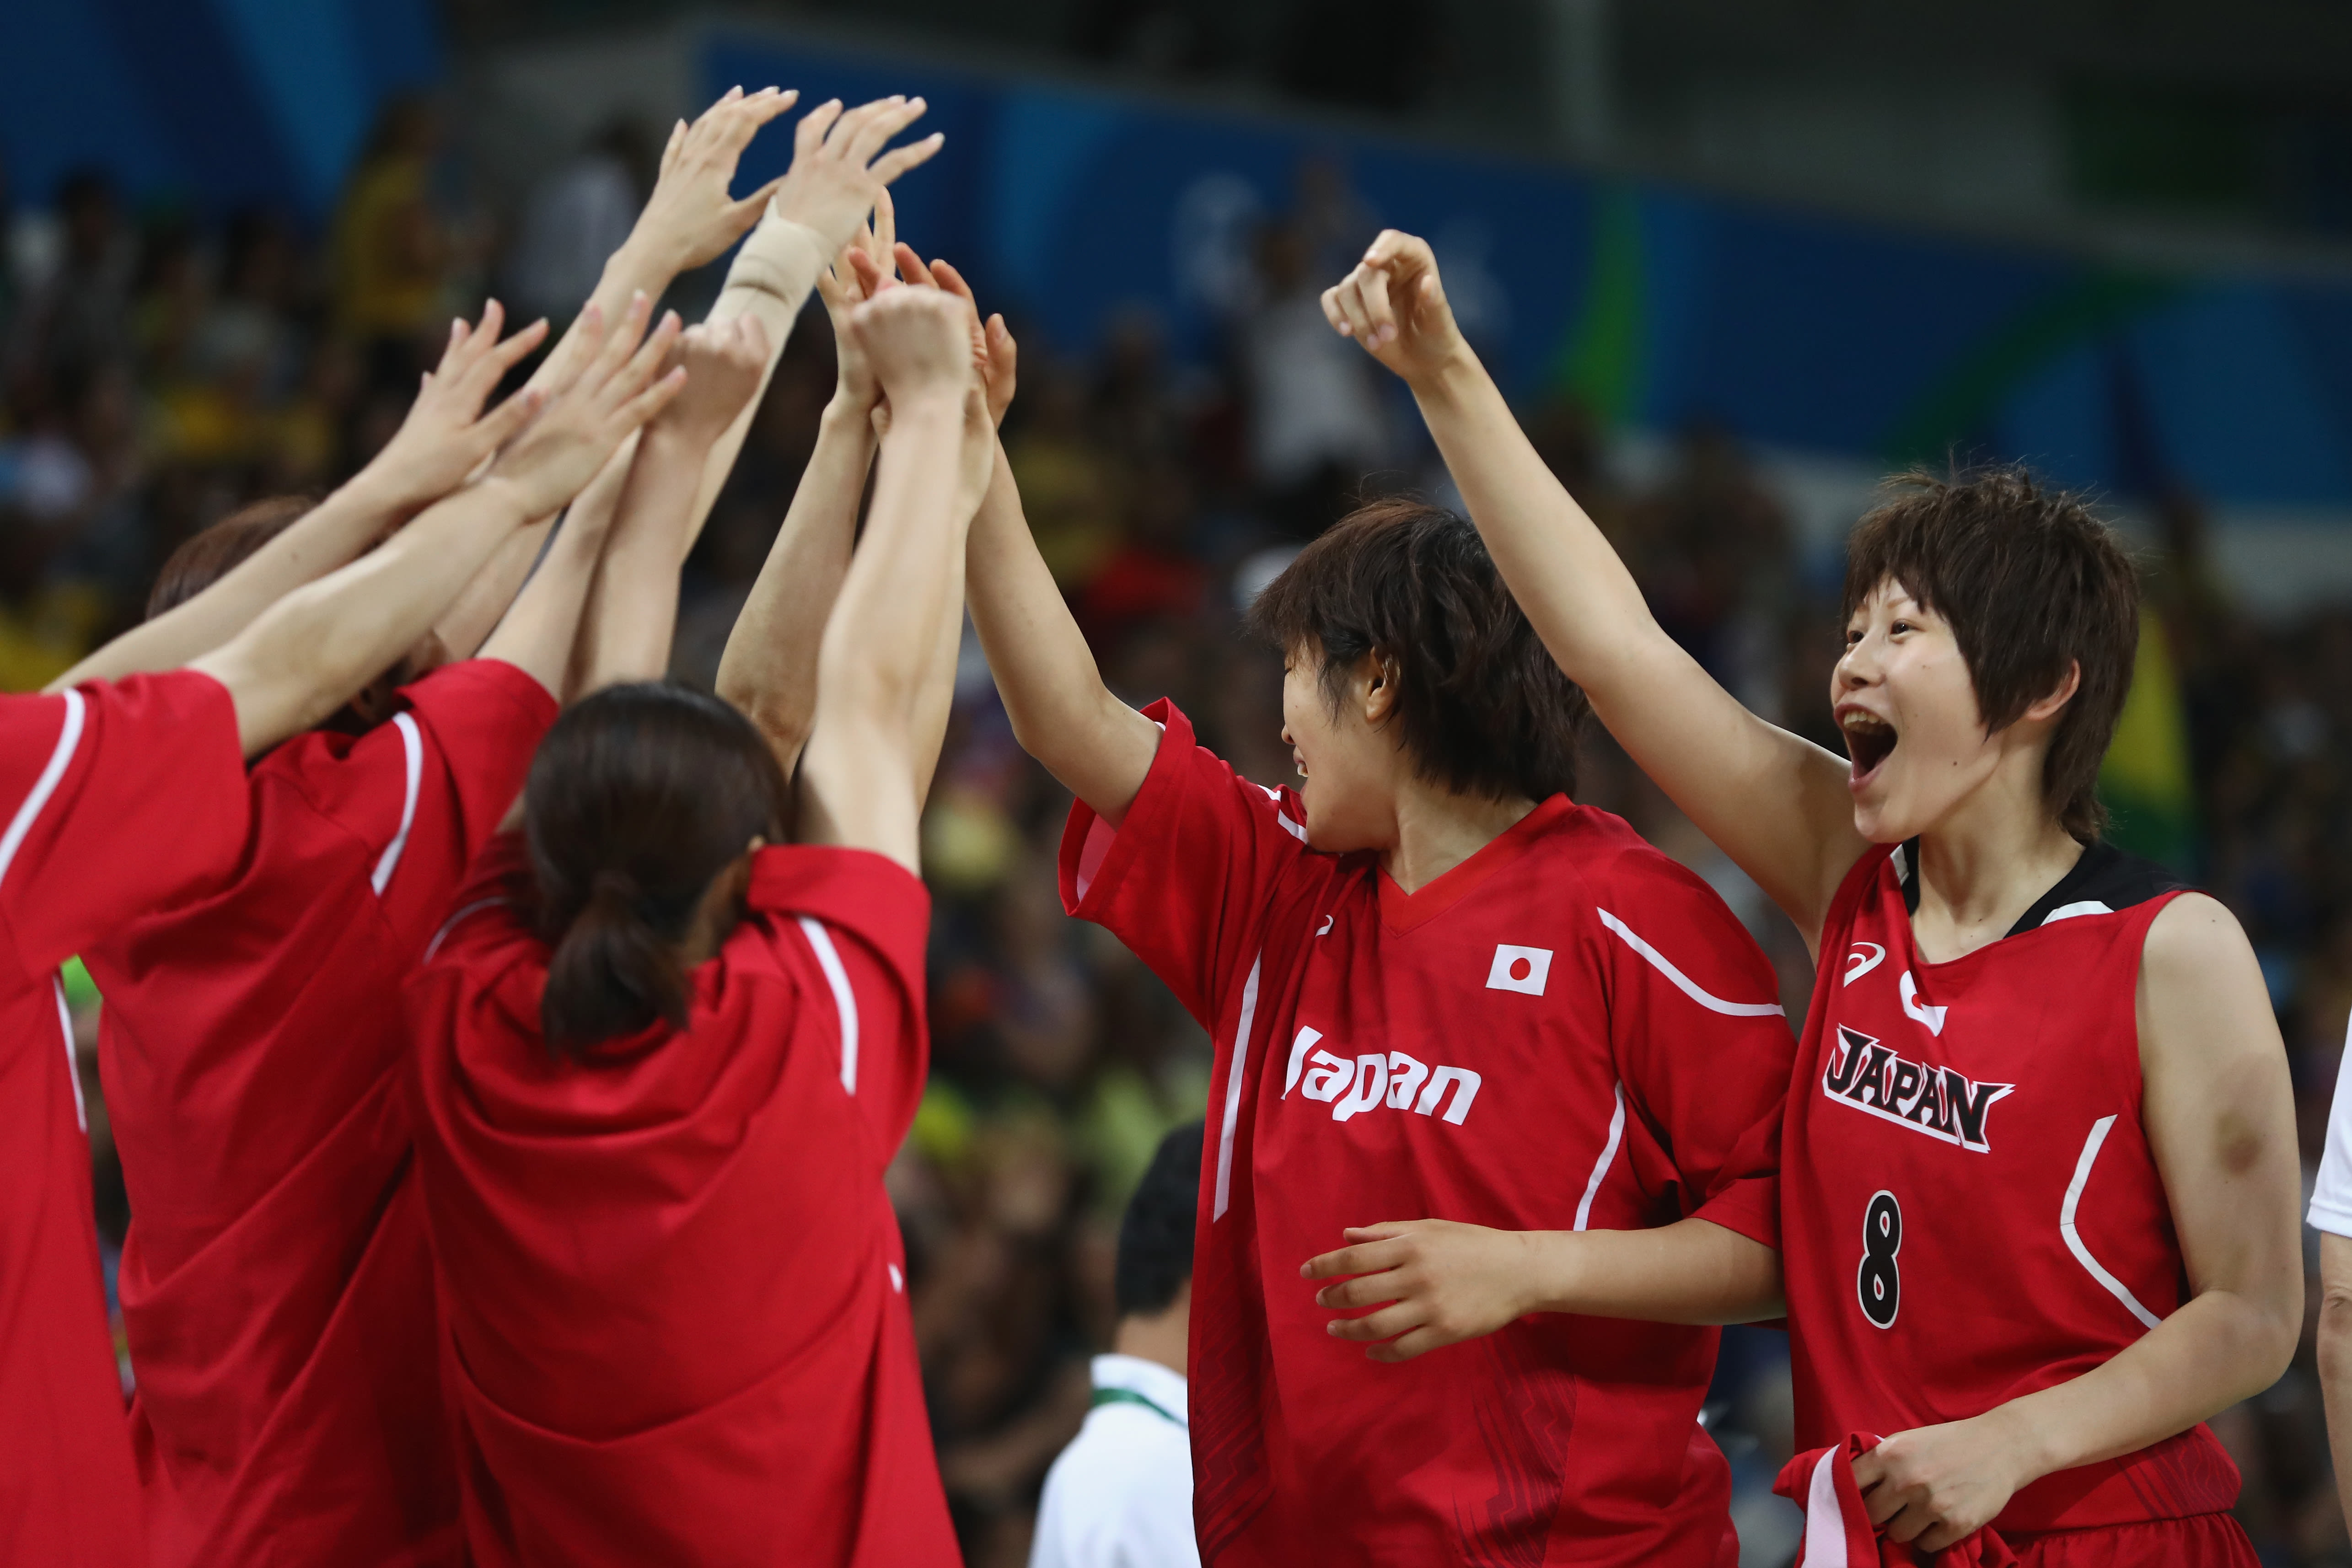 バスケットボール競技の組み合わせ発表 日本は男子が世界2位スペイン 女子が世界1位アメリカと同組